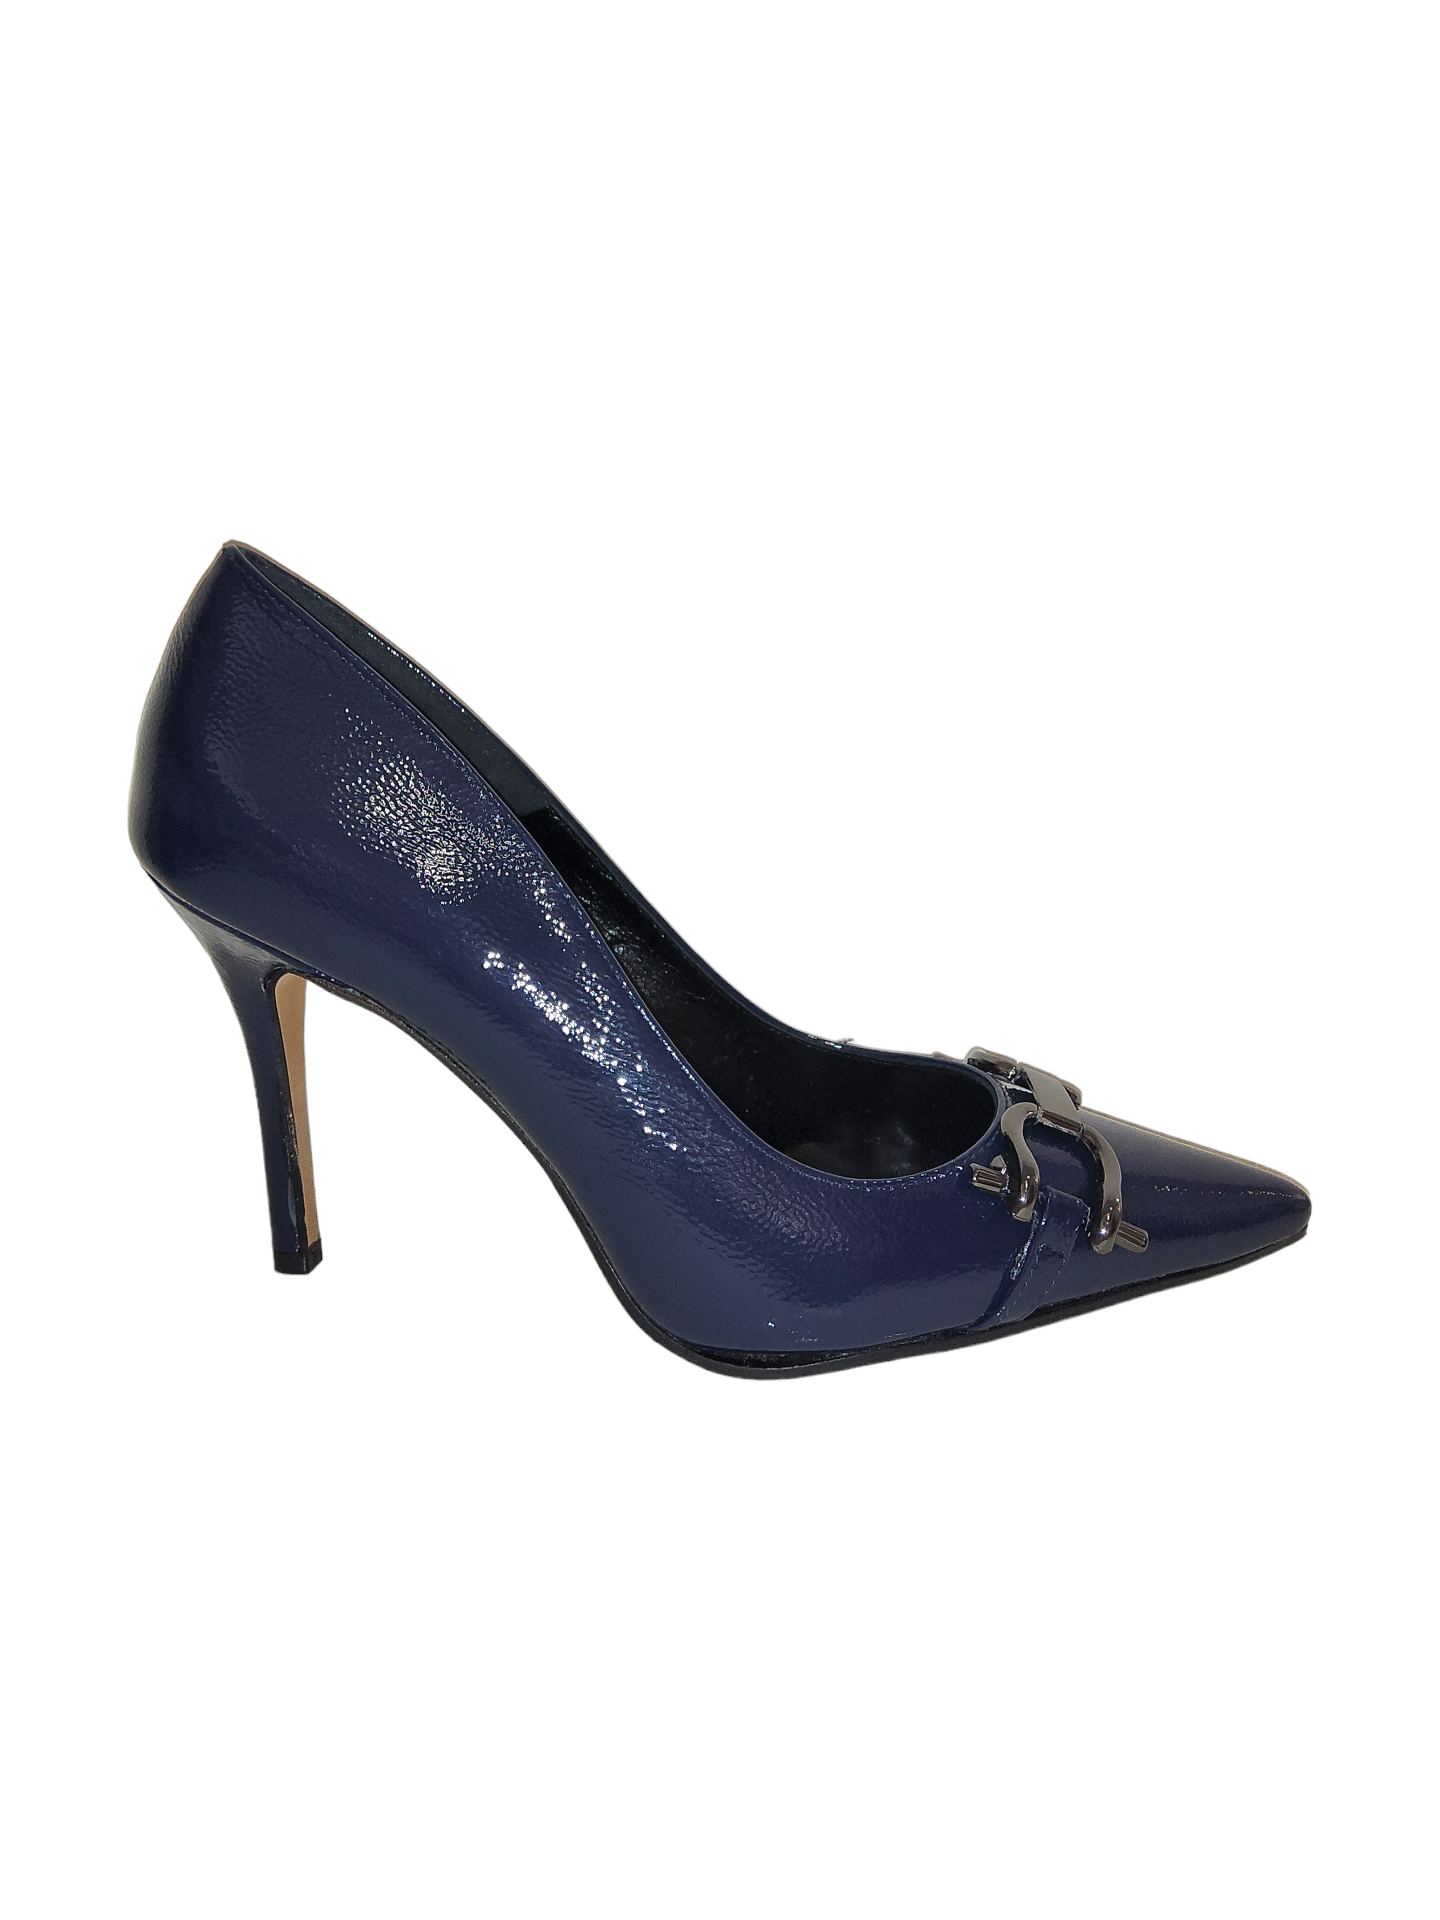 Blue court shoe